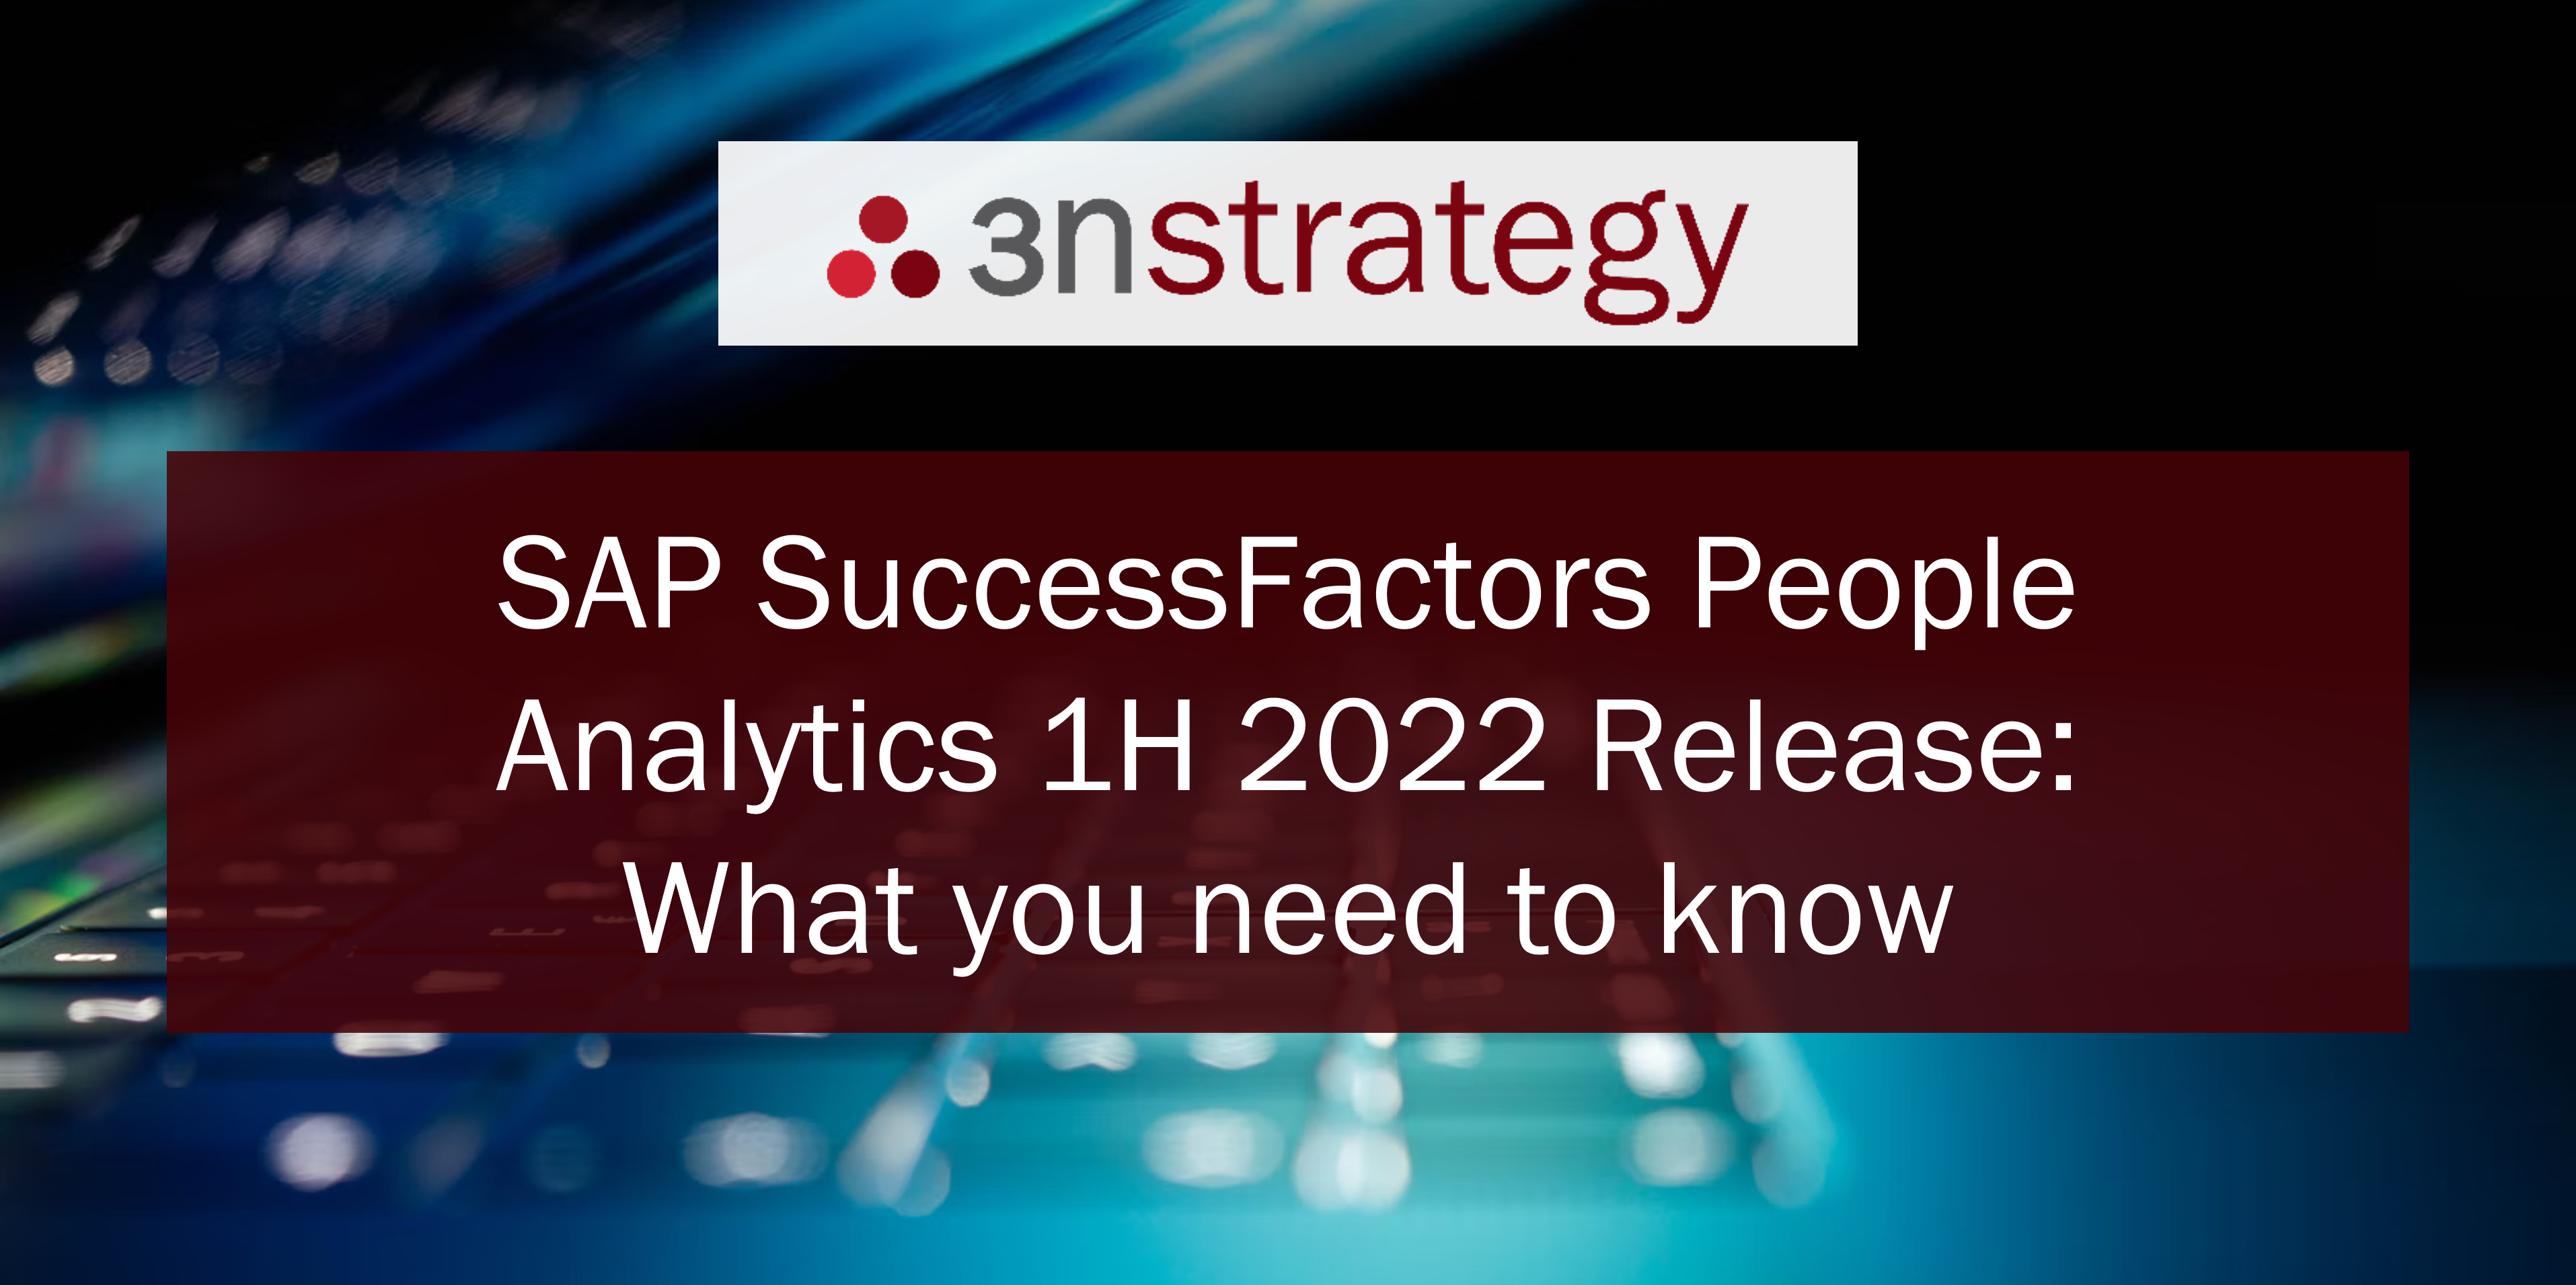 3n Strategy SuccessFactors People Analytics 1H 2022 Release